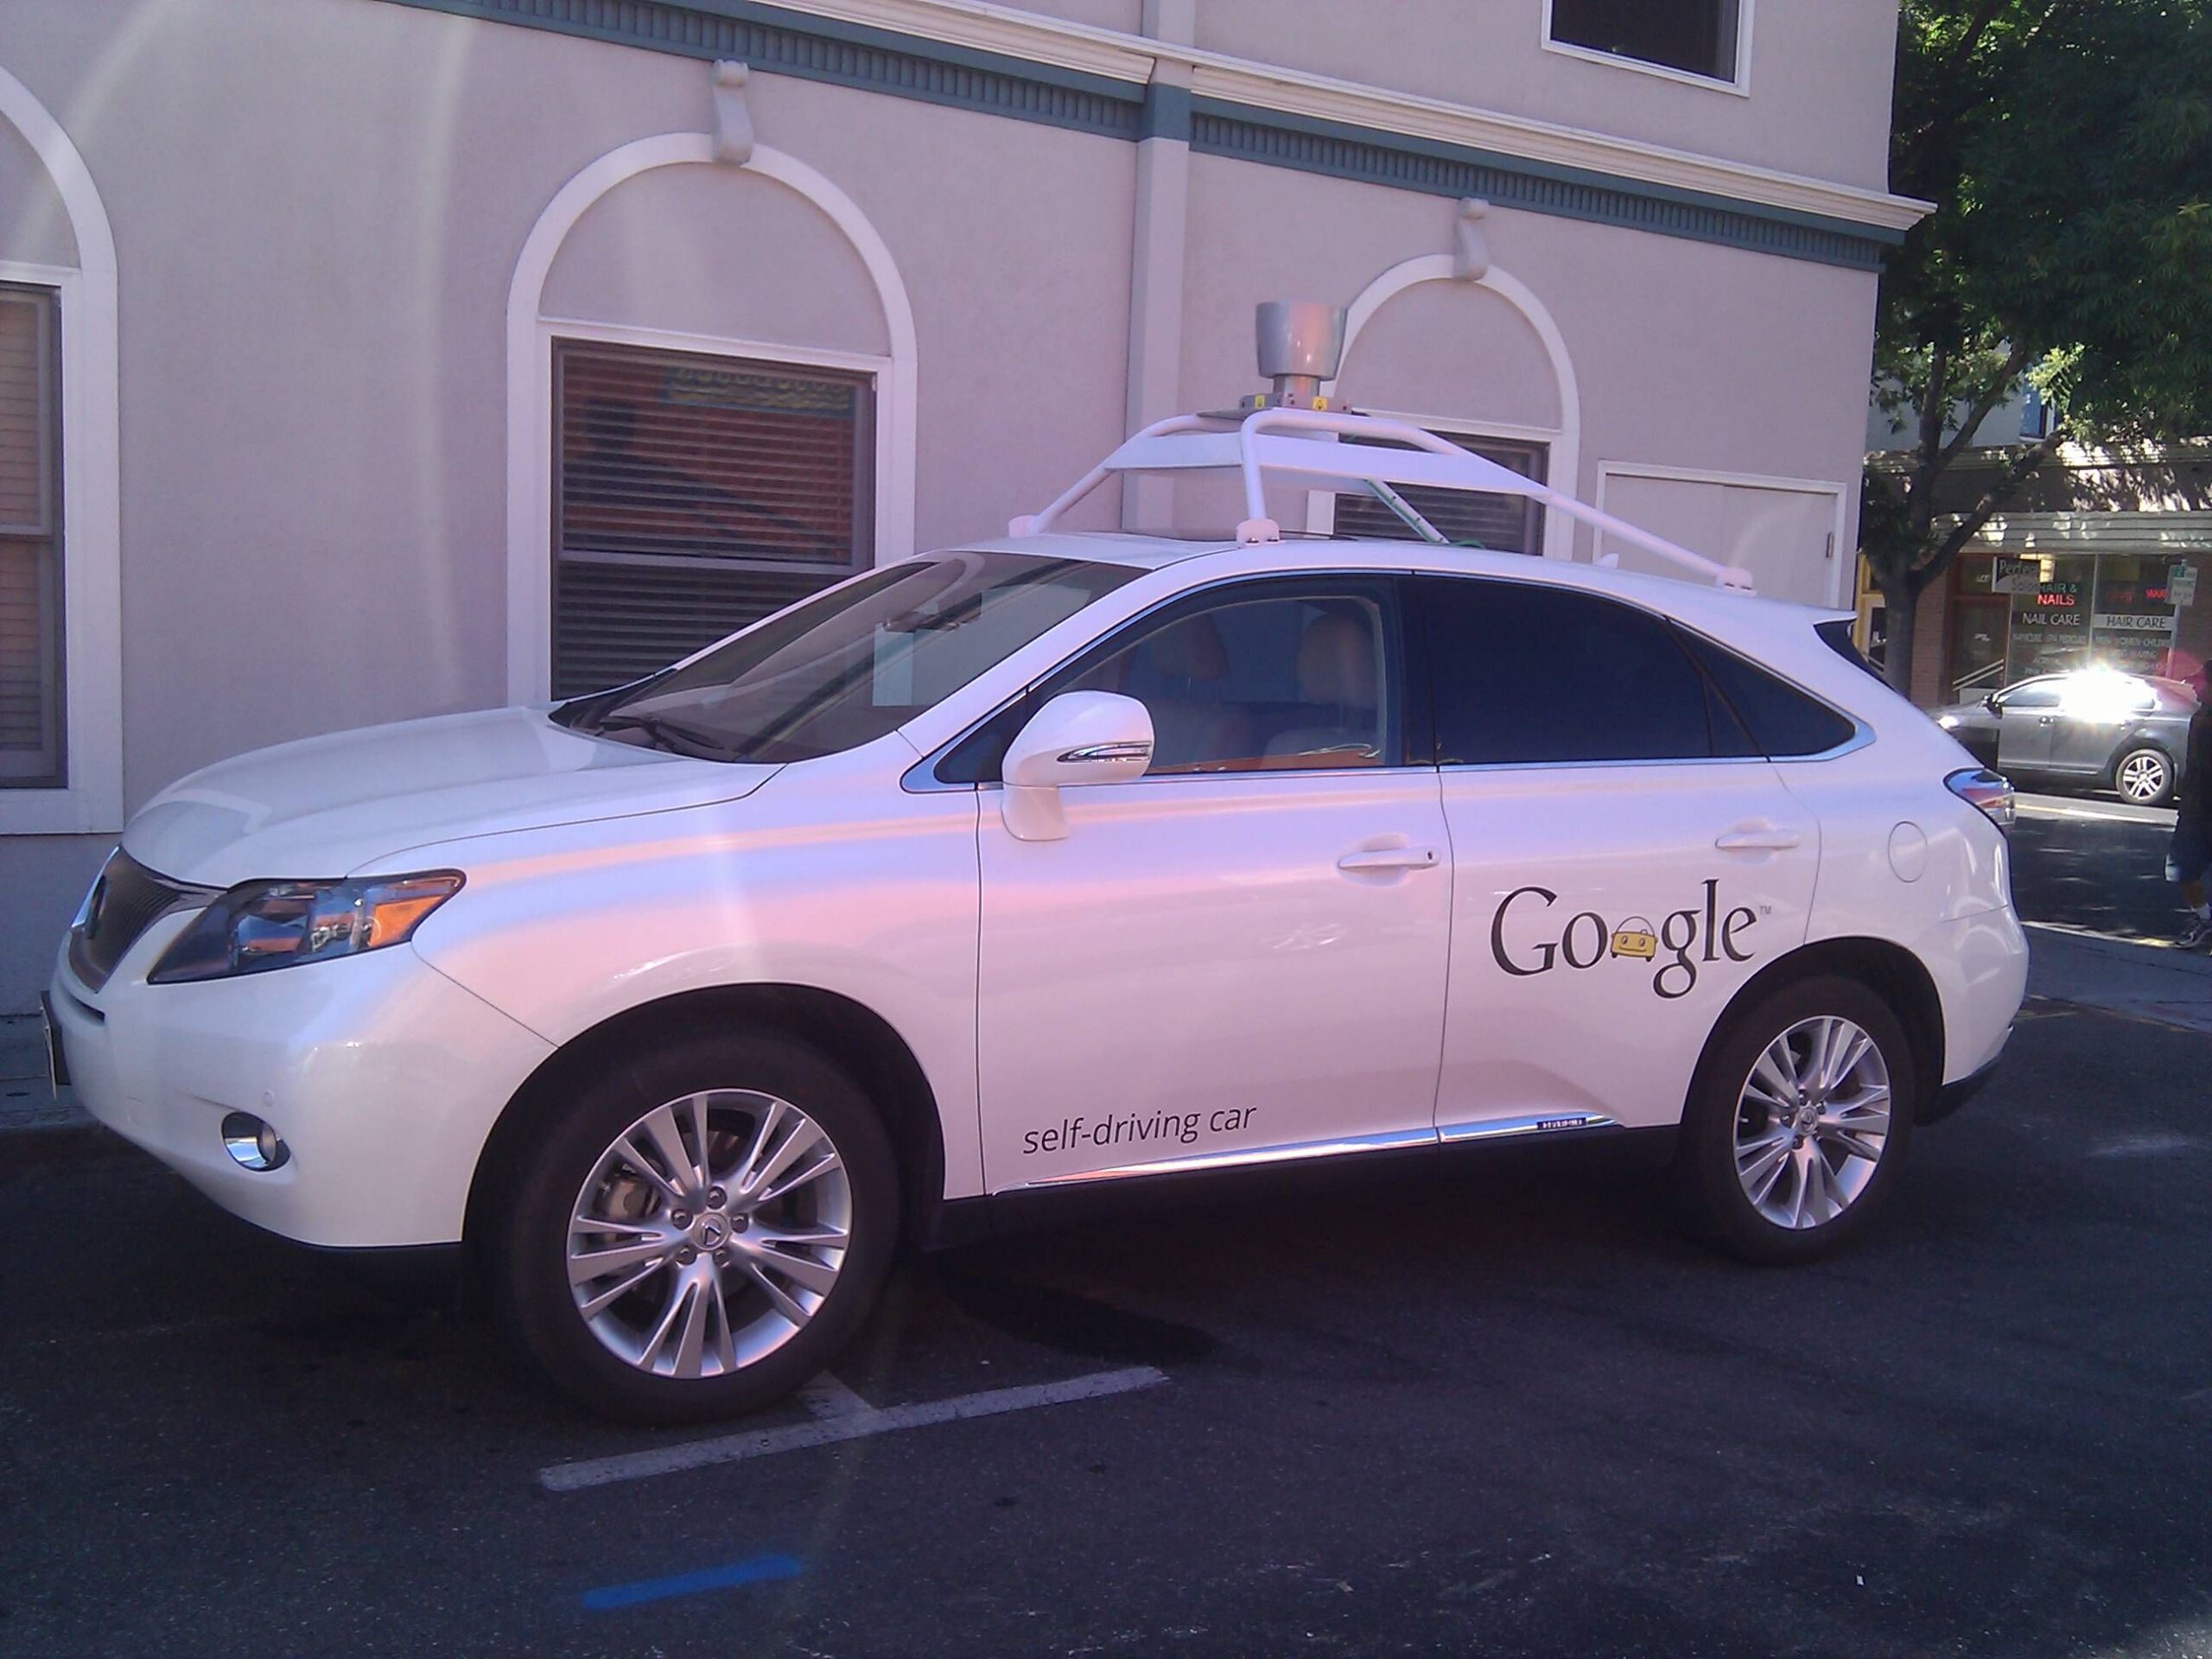 Le Google Car che si guidano da sole arrivano in strada